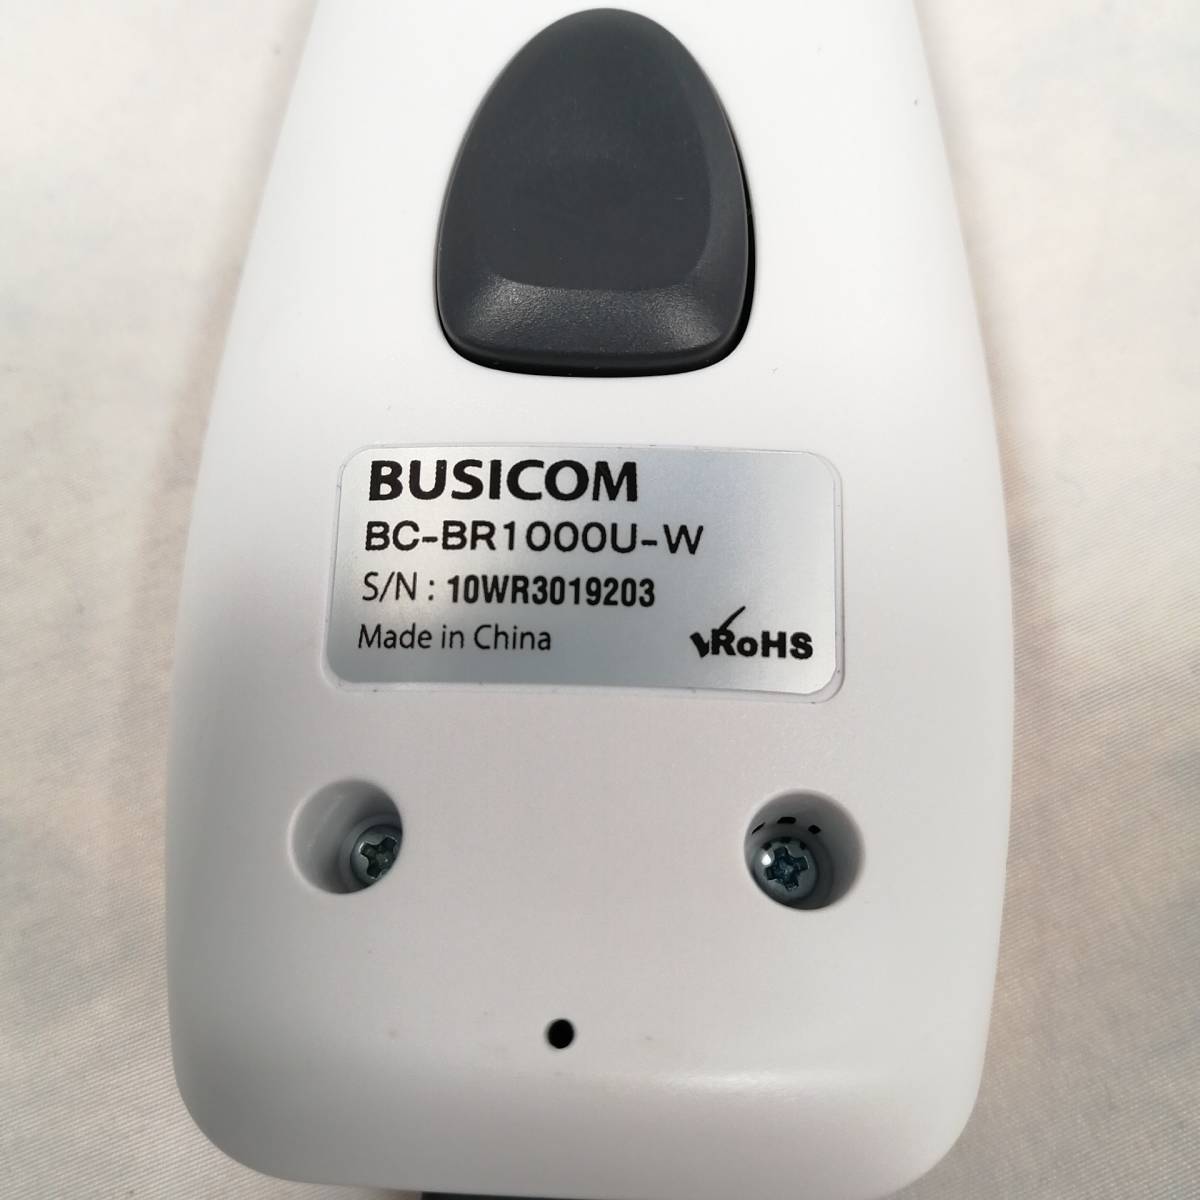 ビジコム 省電力 バーコードリーダー USB (ホワイト) BC-BR1000U-W-C 【USED】a08369